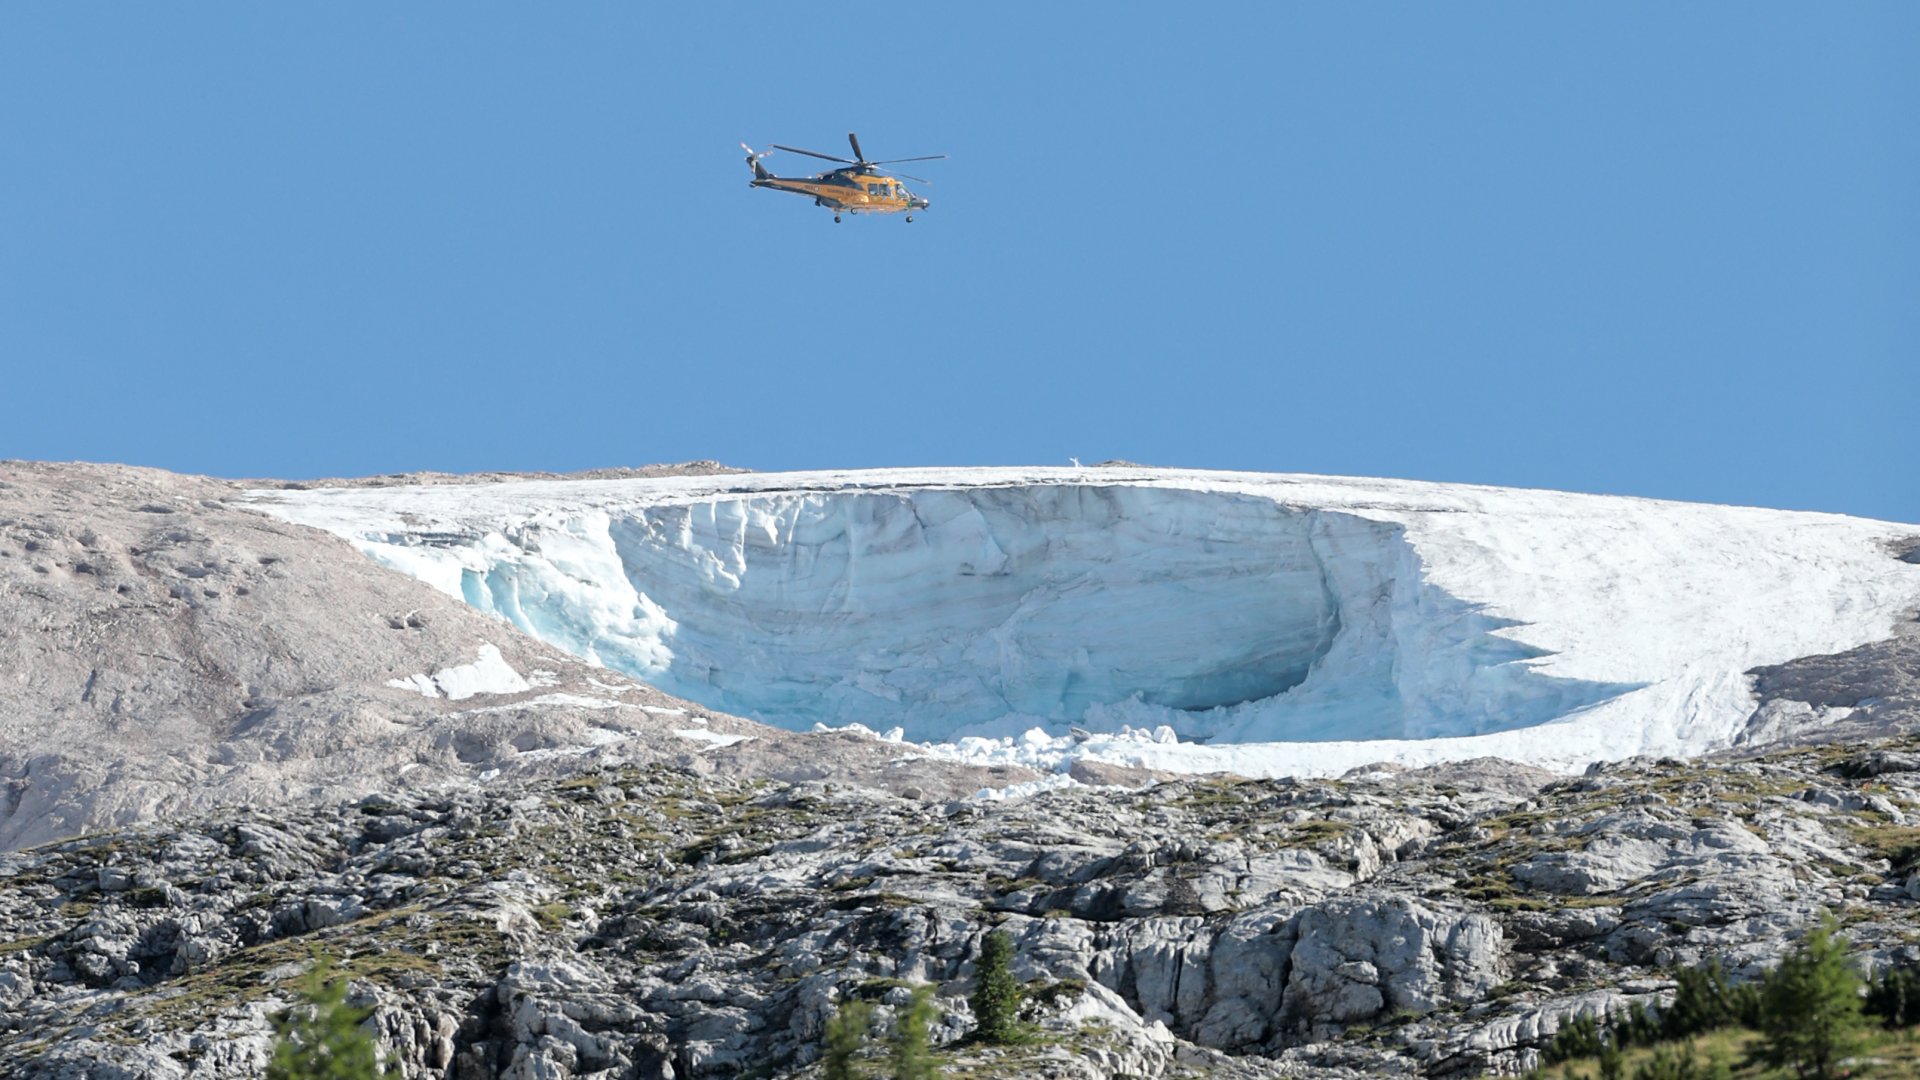 Helikopter repül az olaszországi Marmolada gleccser felett 2022. július 4-én, egy nappal azután, hogy egy jégomlás miatt hét ember meghalt